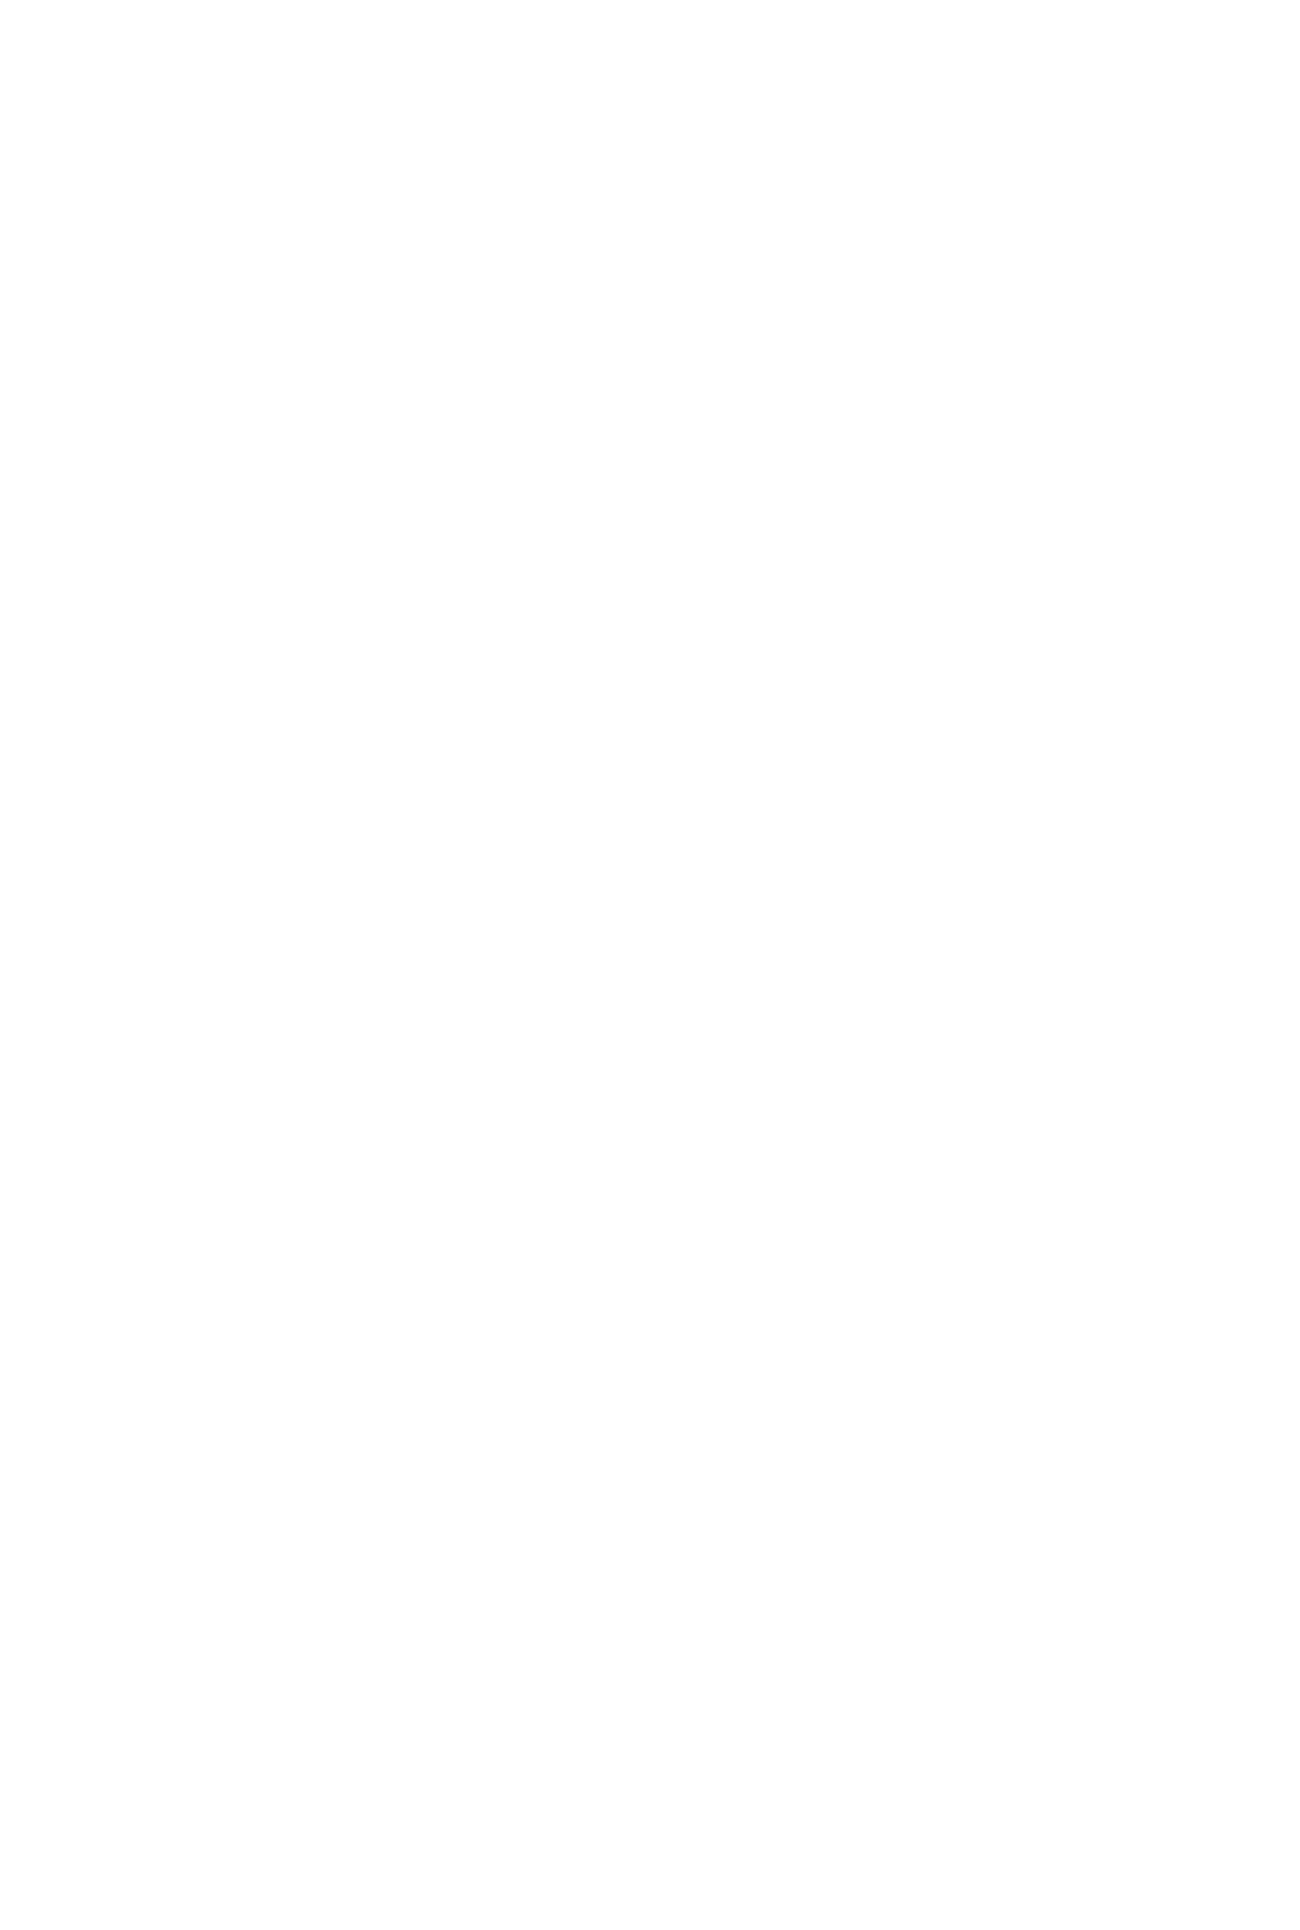 Schmetterlinge- Body Mind Spirit School Designelement